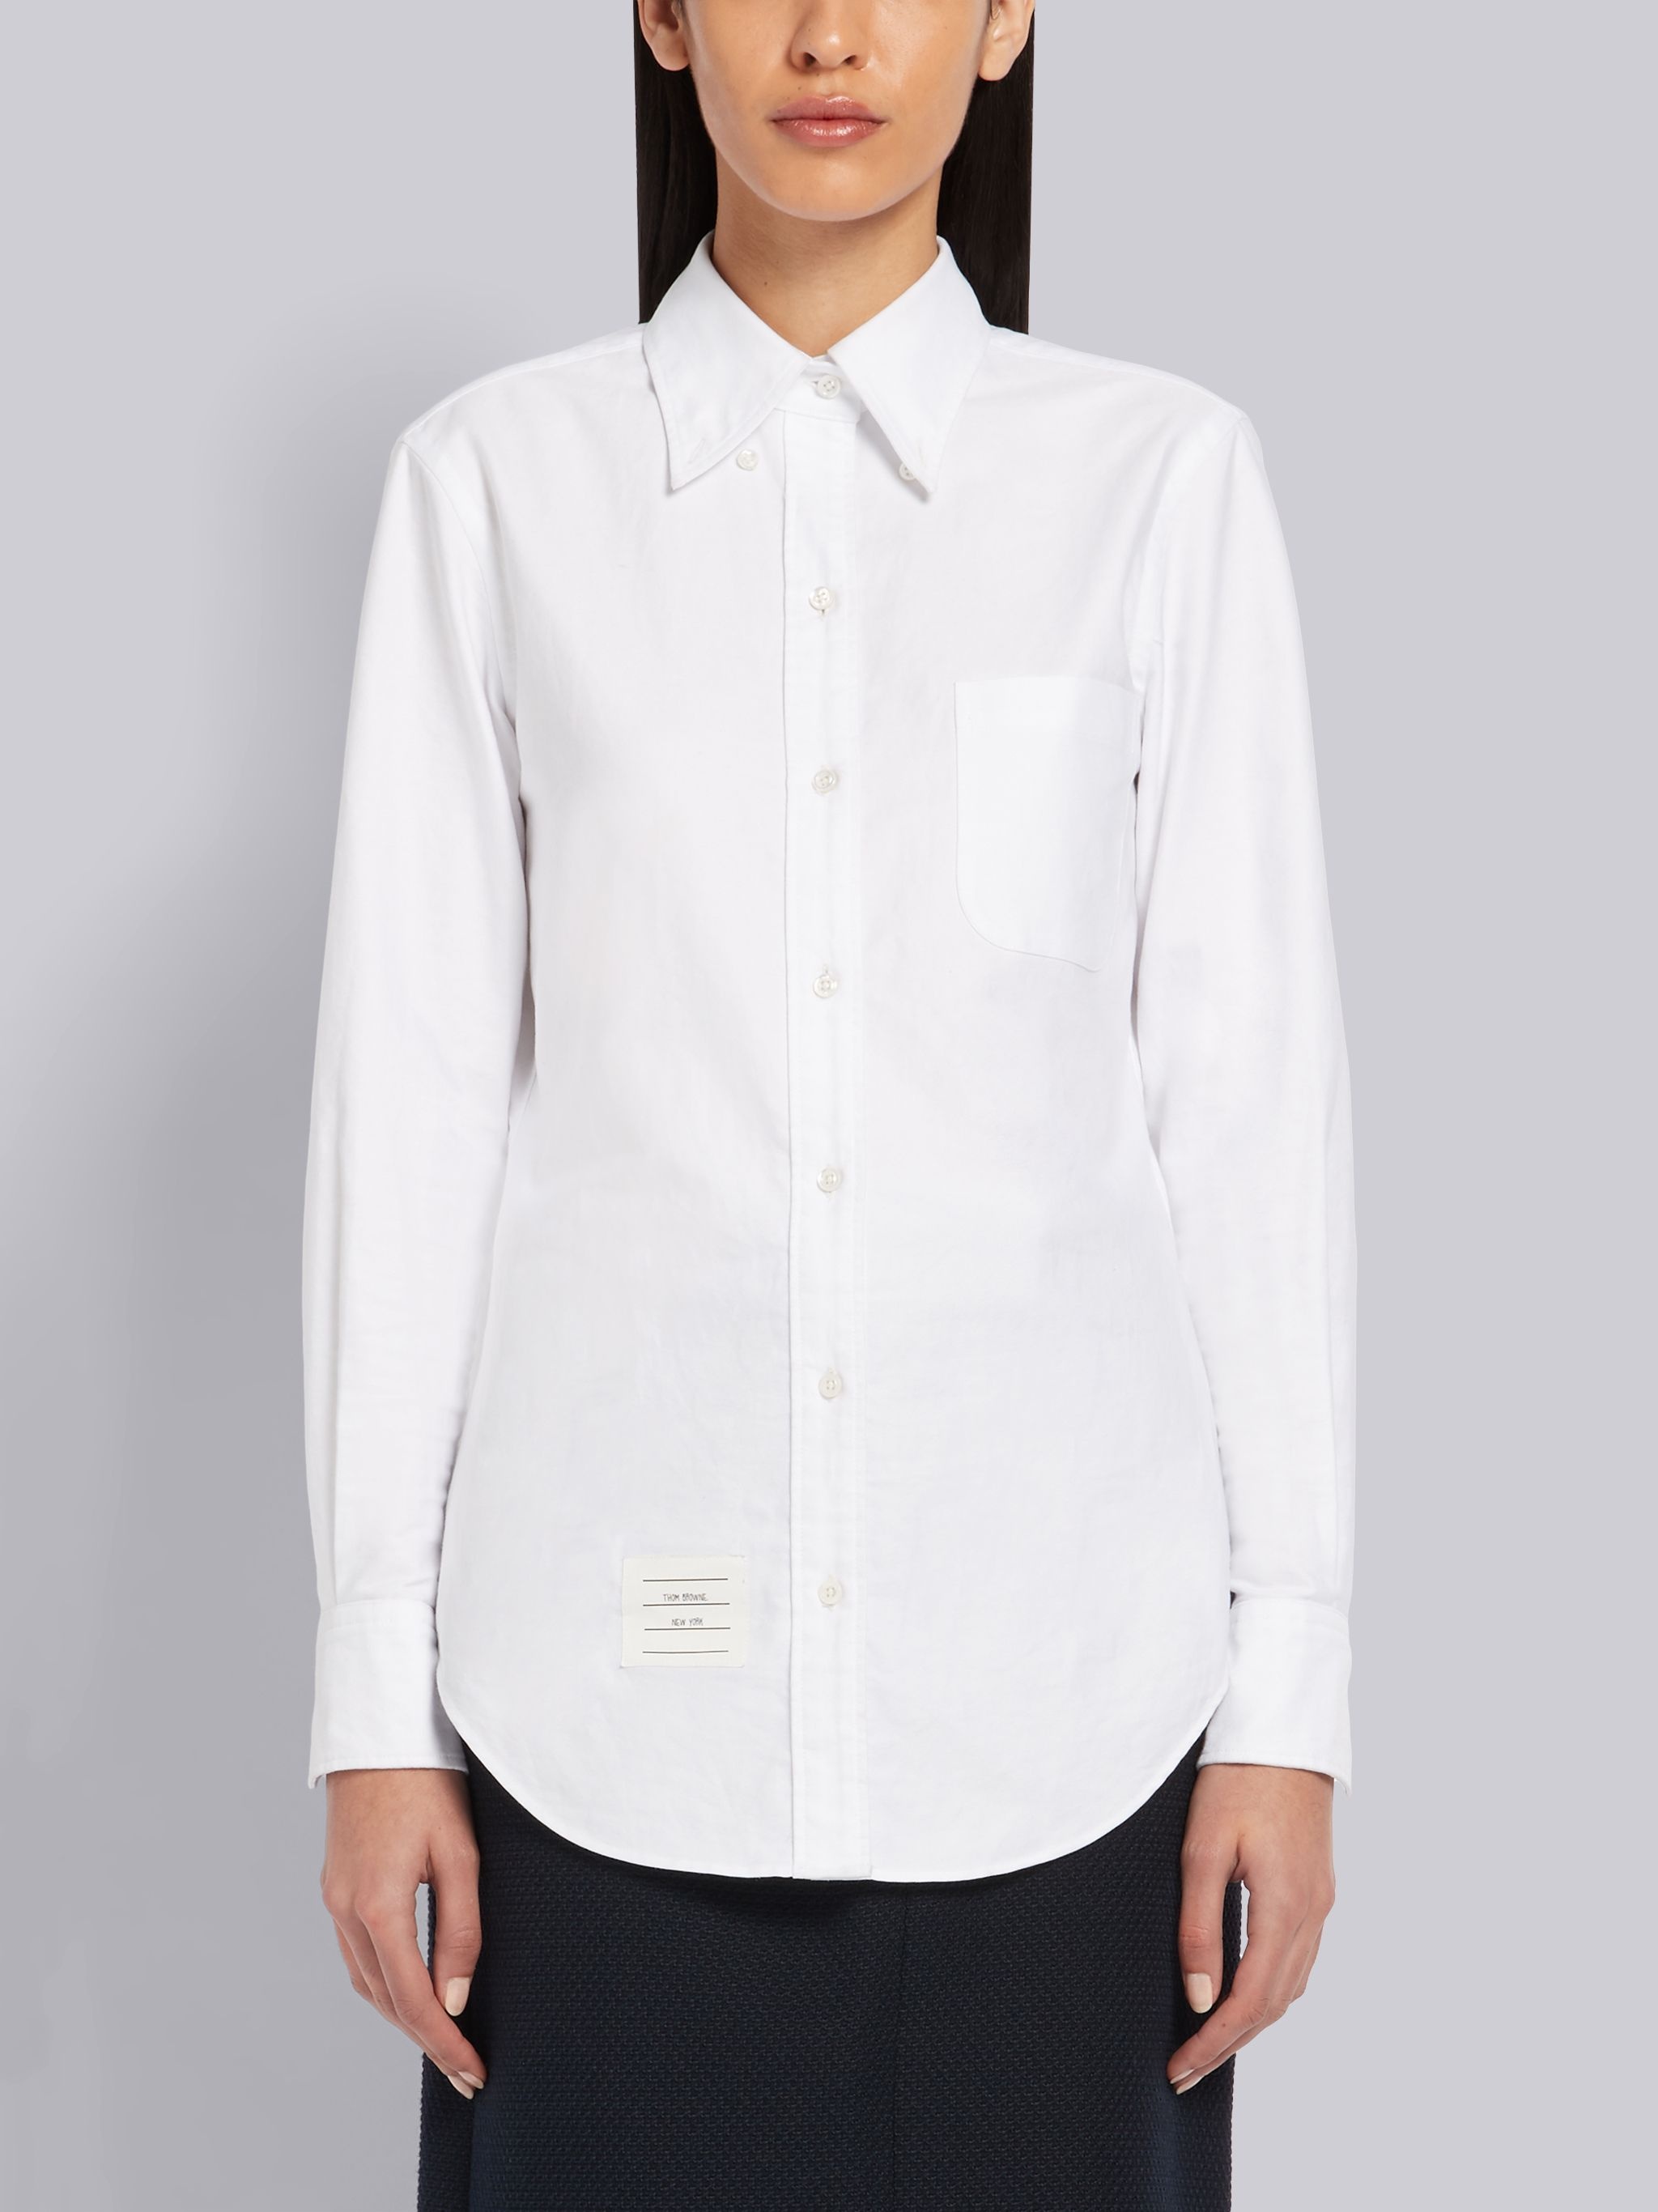 White Oxford RWB Tab Long Sleeve Shirt - 3